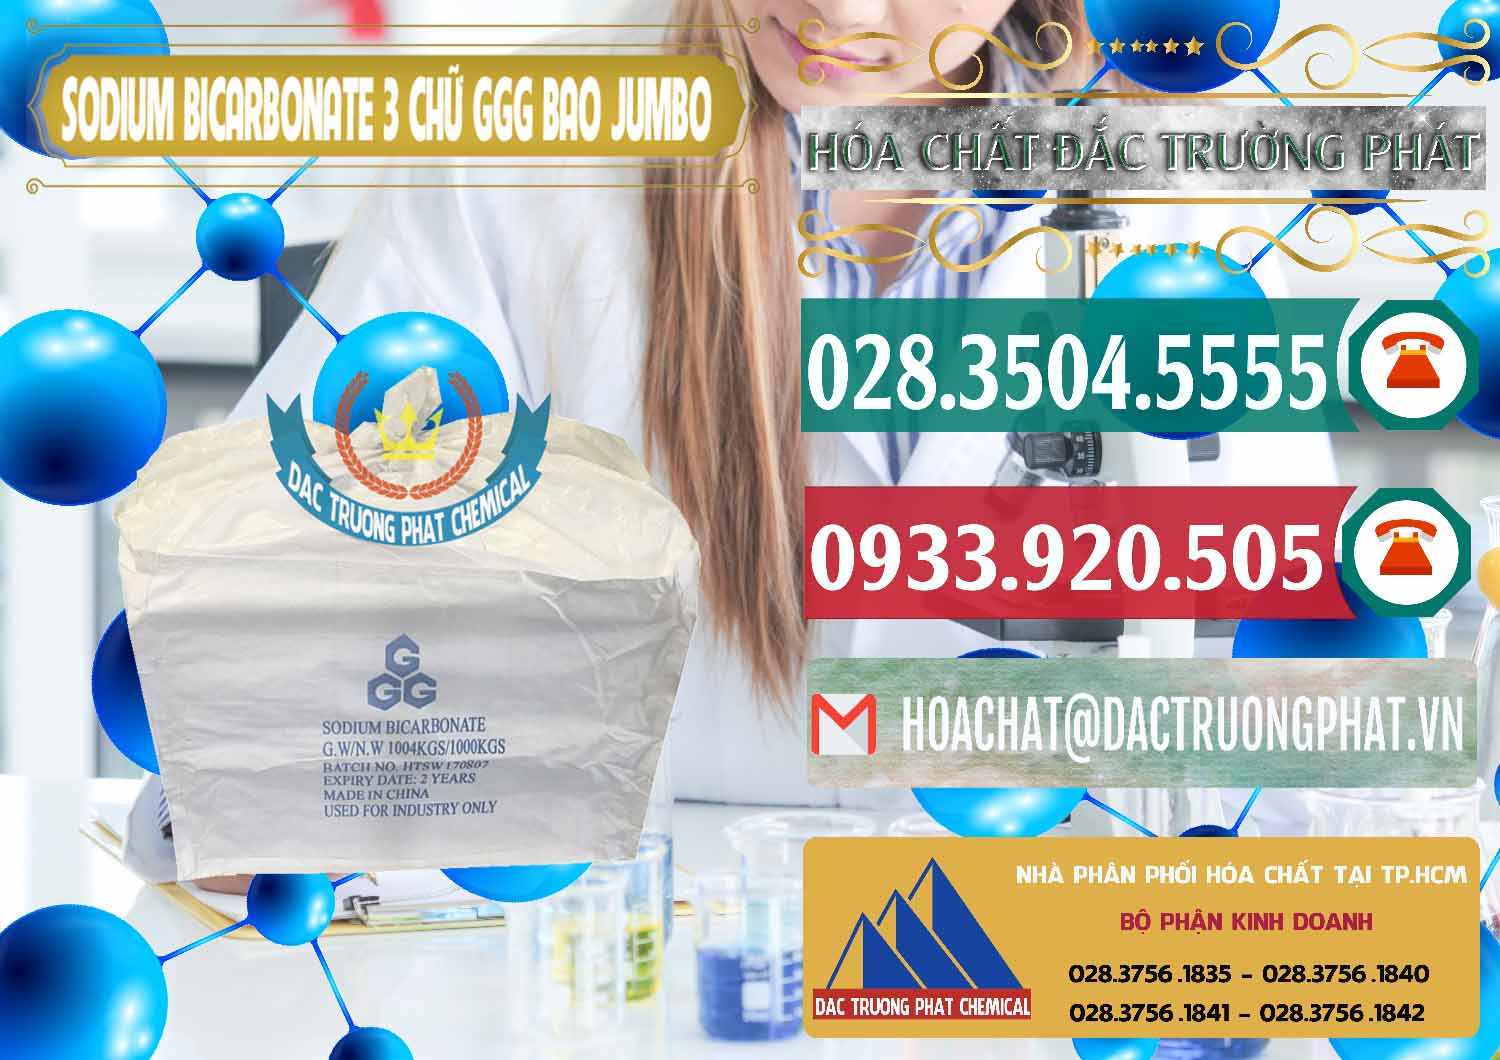 Cty chuyên nhập khẩu và bán Sodium Bicarbonate – Bicar NaHCO3 Food Grade 3 Chữ GGG Bao Jumbo ( Bành ) Trung Quốc China - 0260 - Công ty bán ( phân phối ) hóa chất tại TP.HCM - muabanhoachat.vn